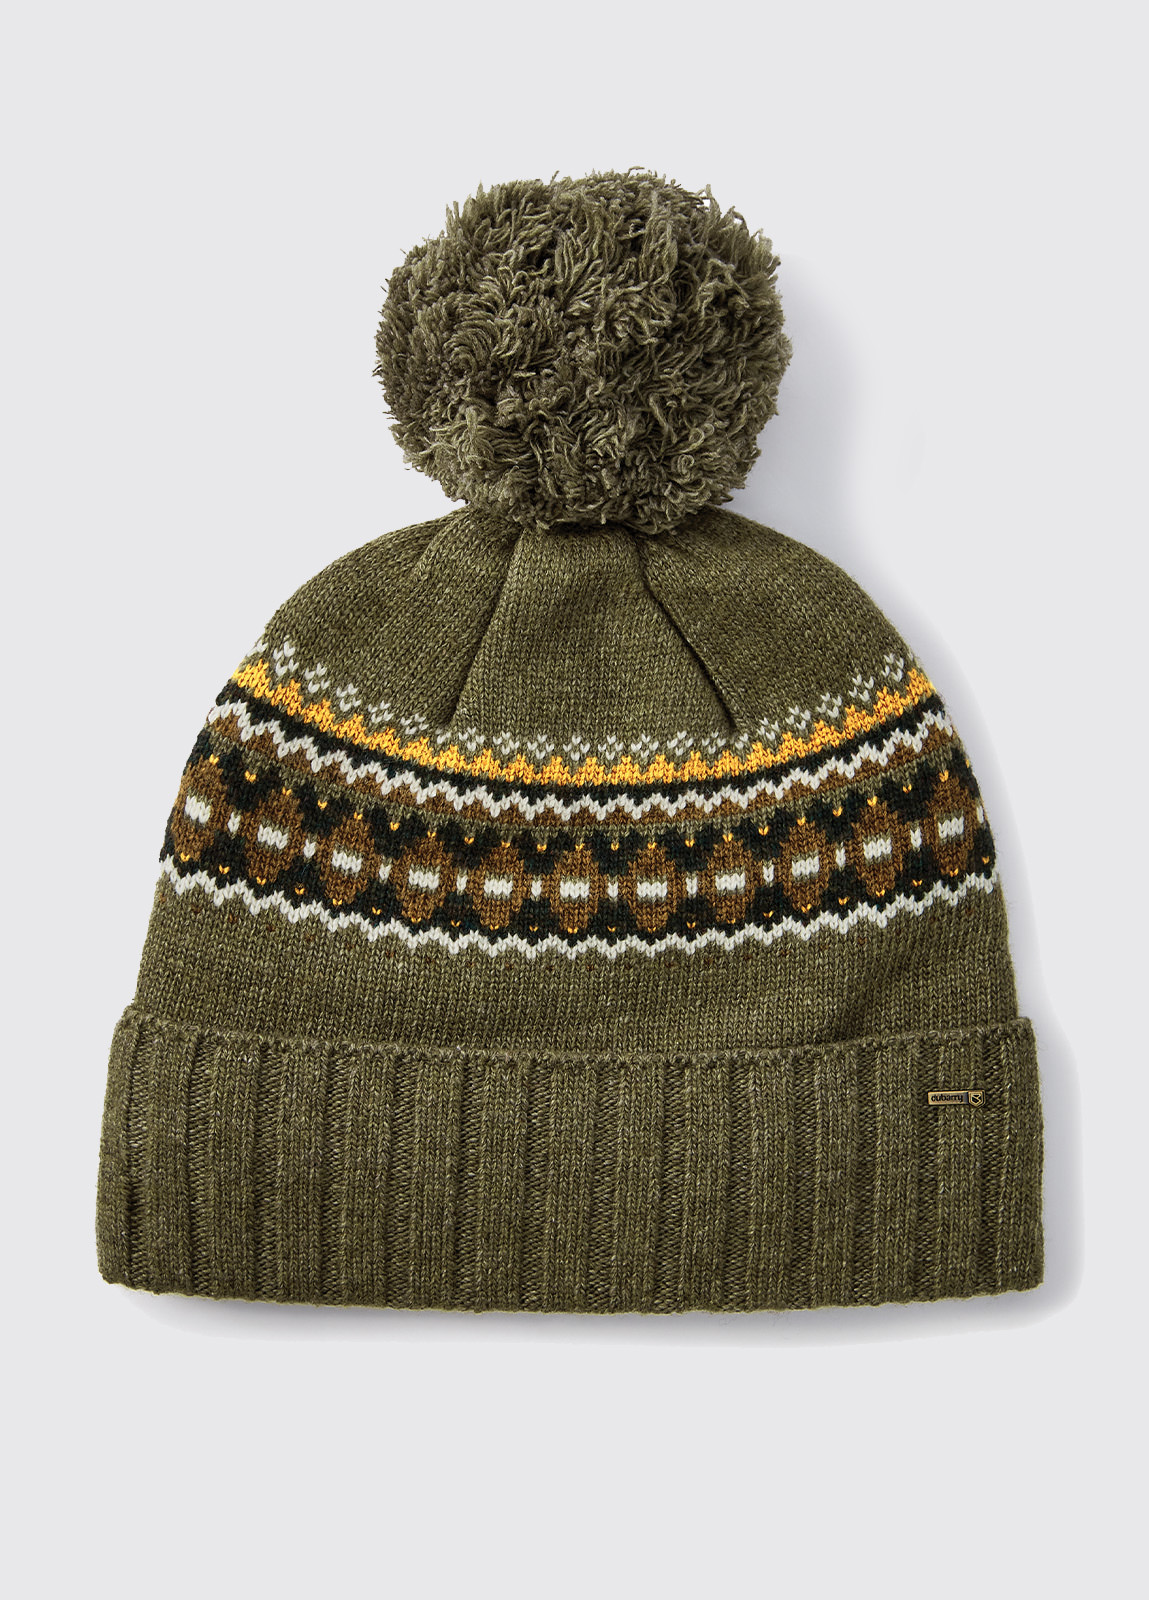 Kilcormac Knitted Hat - Dusky Green